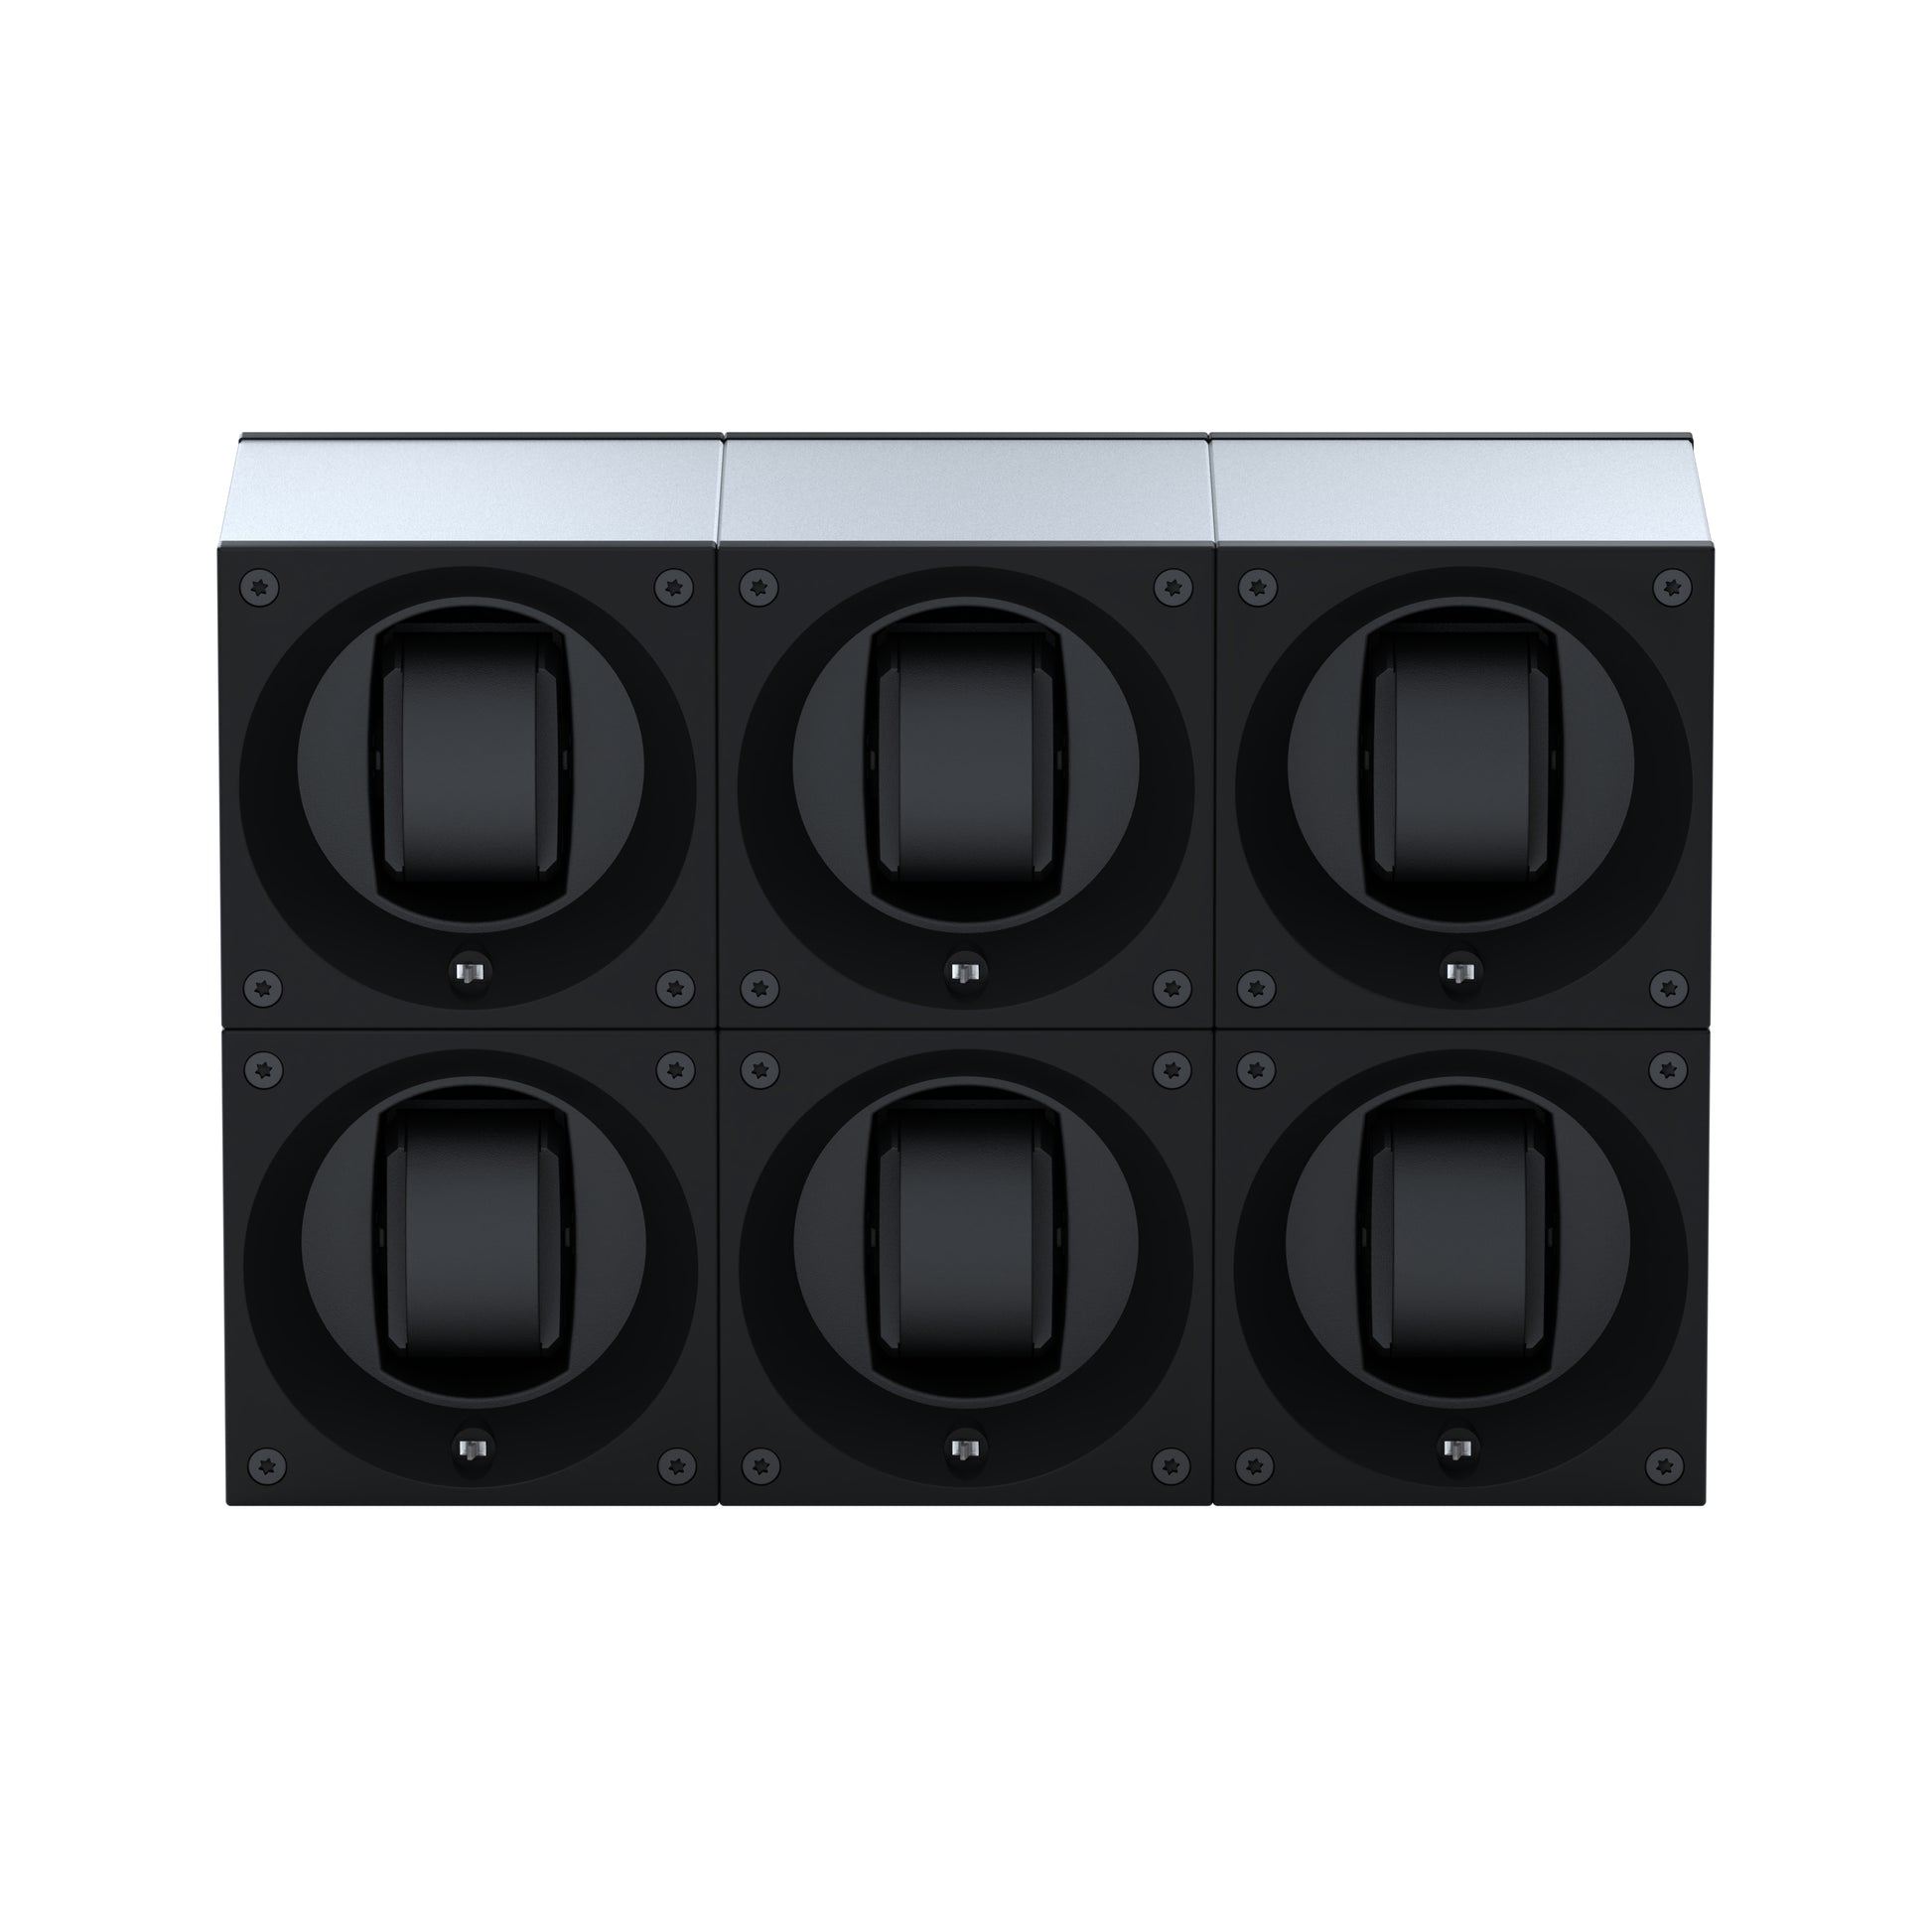 Masterbox 6 montres Aluminium Argent : écrin rotatif pour montre automatique